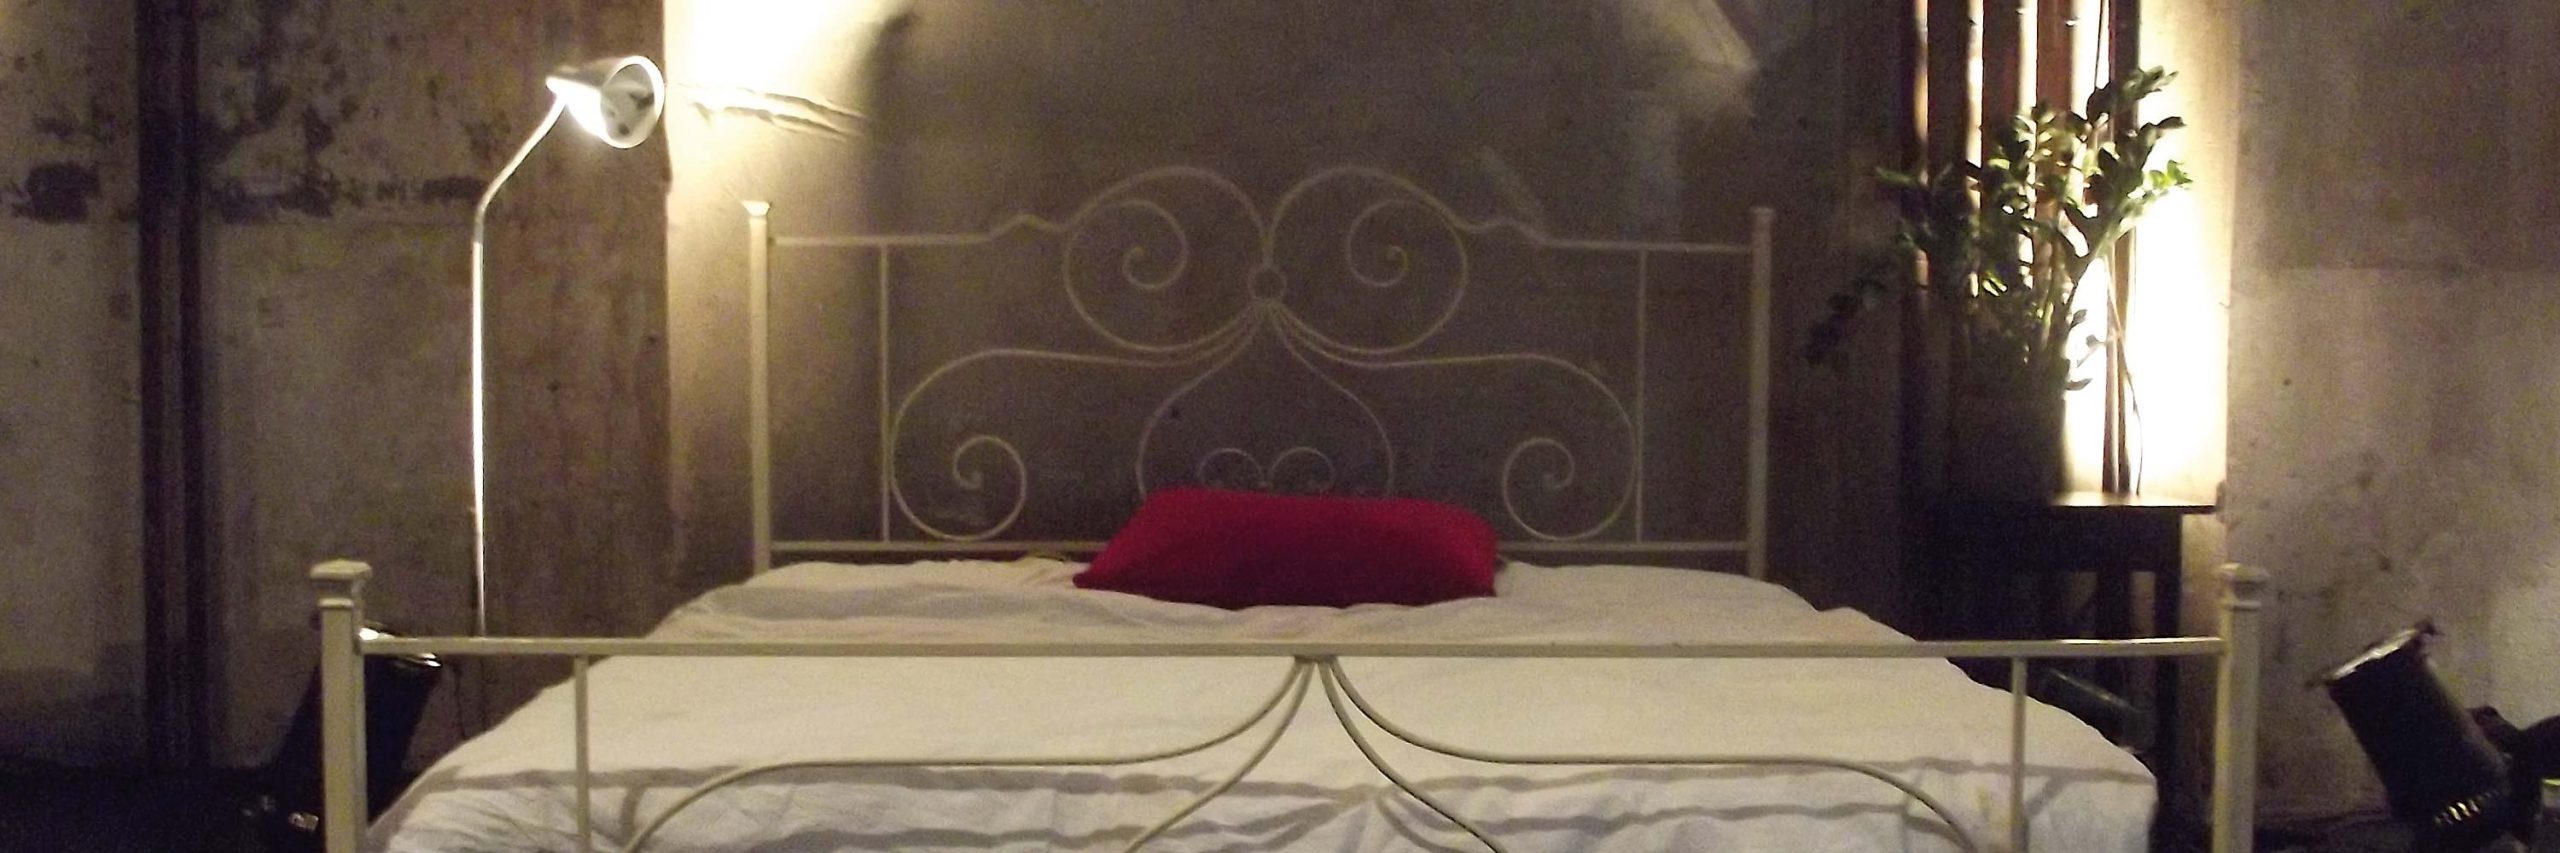 Ein weißes Doppelbett steht in einem Raum. Ein rotes Kissen liegt darauf.